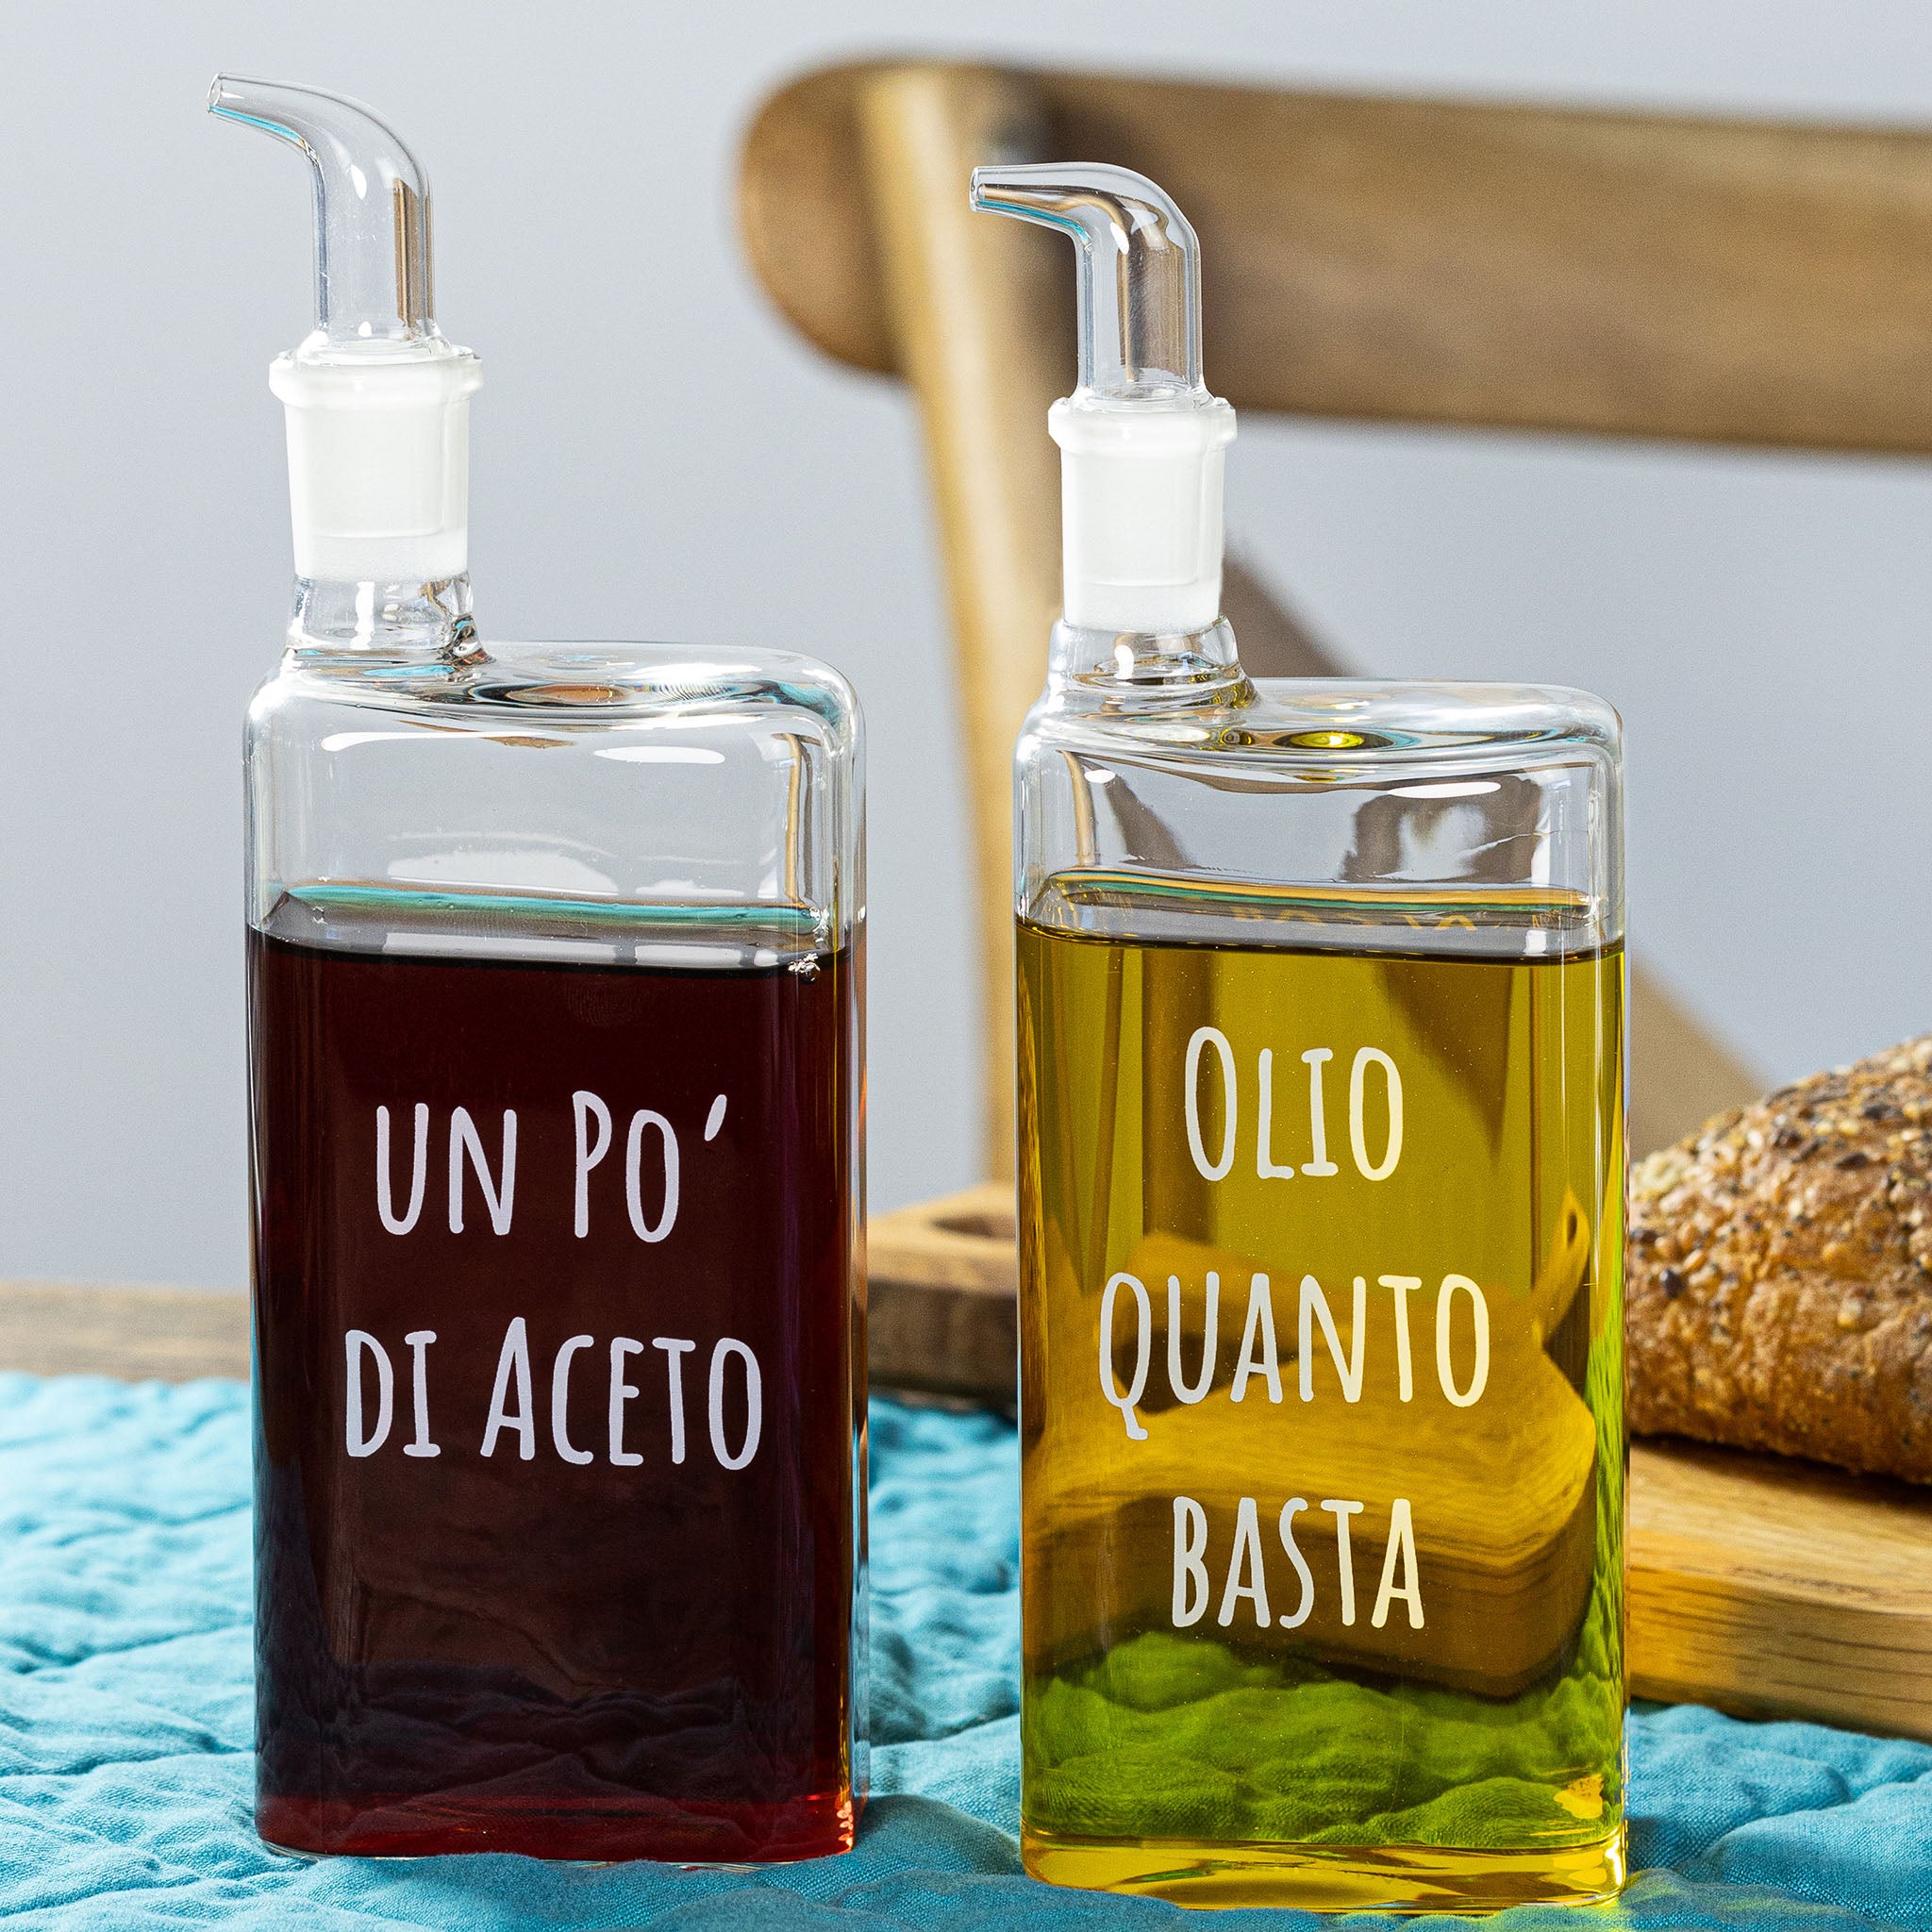 Olio Quanto Basta / Un Po' di Aceto Oil & Vinegar Bottle Set, 400 ml